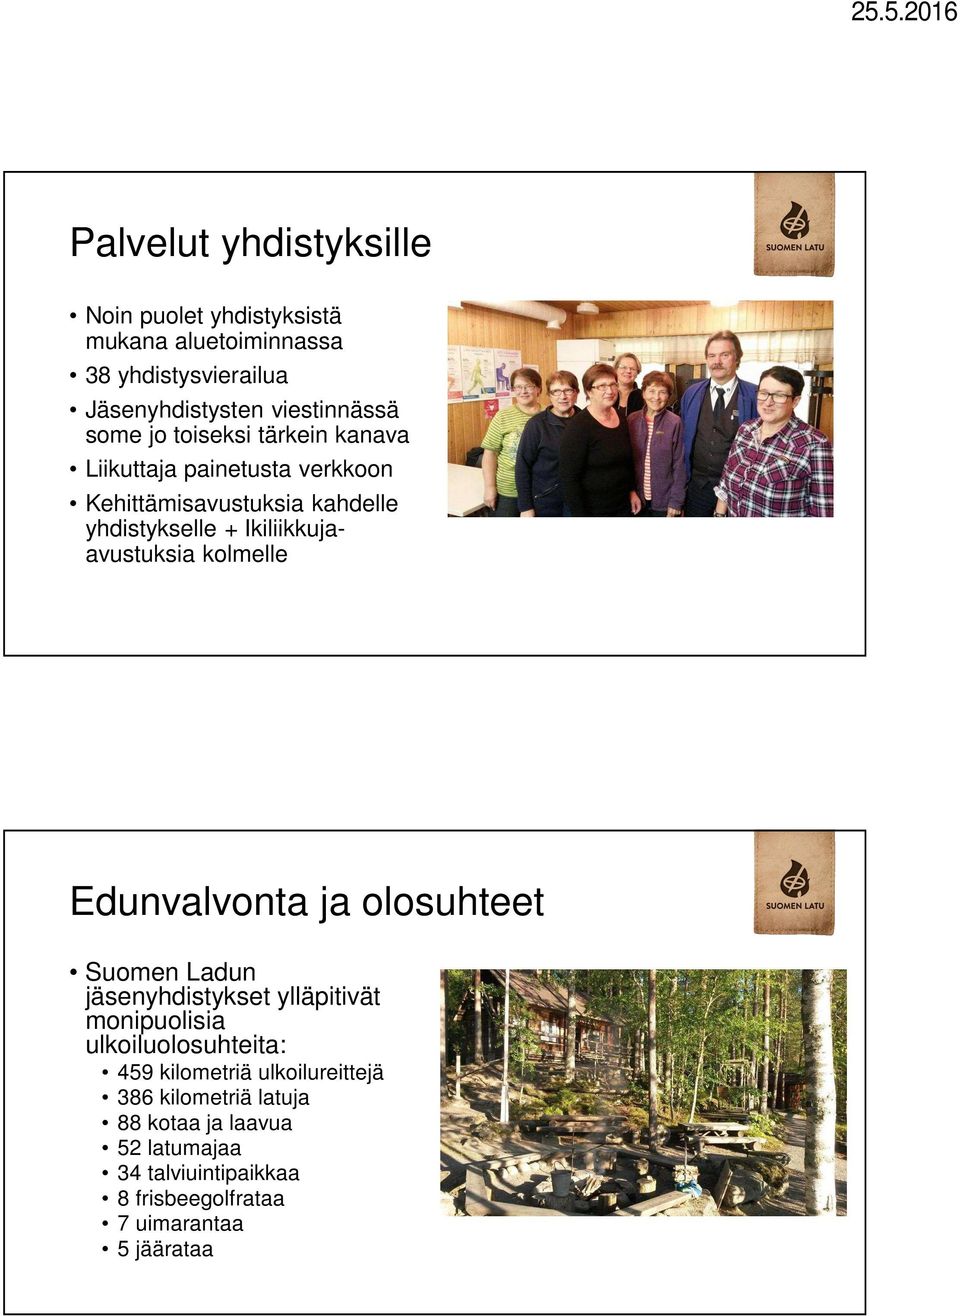 kolmelle Edunvalvonta ja olosuhteet Suomen Ladun jäsenyhdistykset ylläpitivät monipuolisia ulkoiluolosuhteita: 459 kilometriä